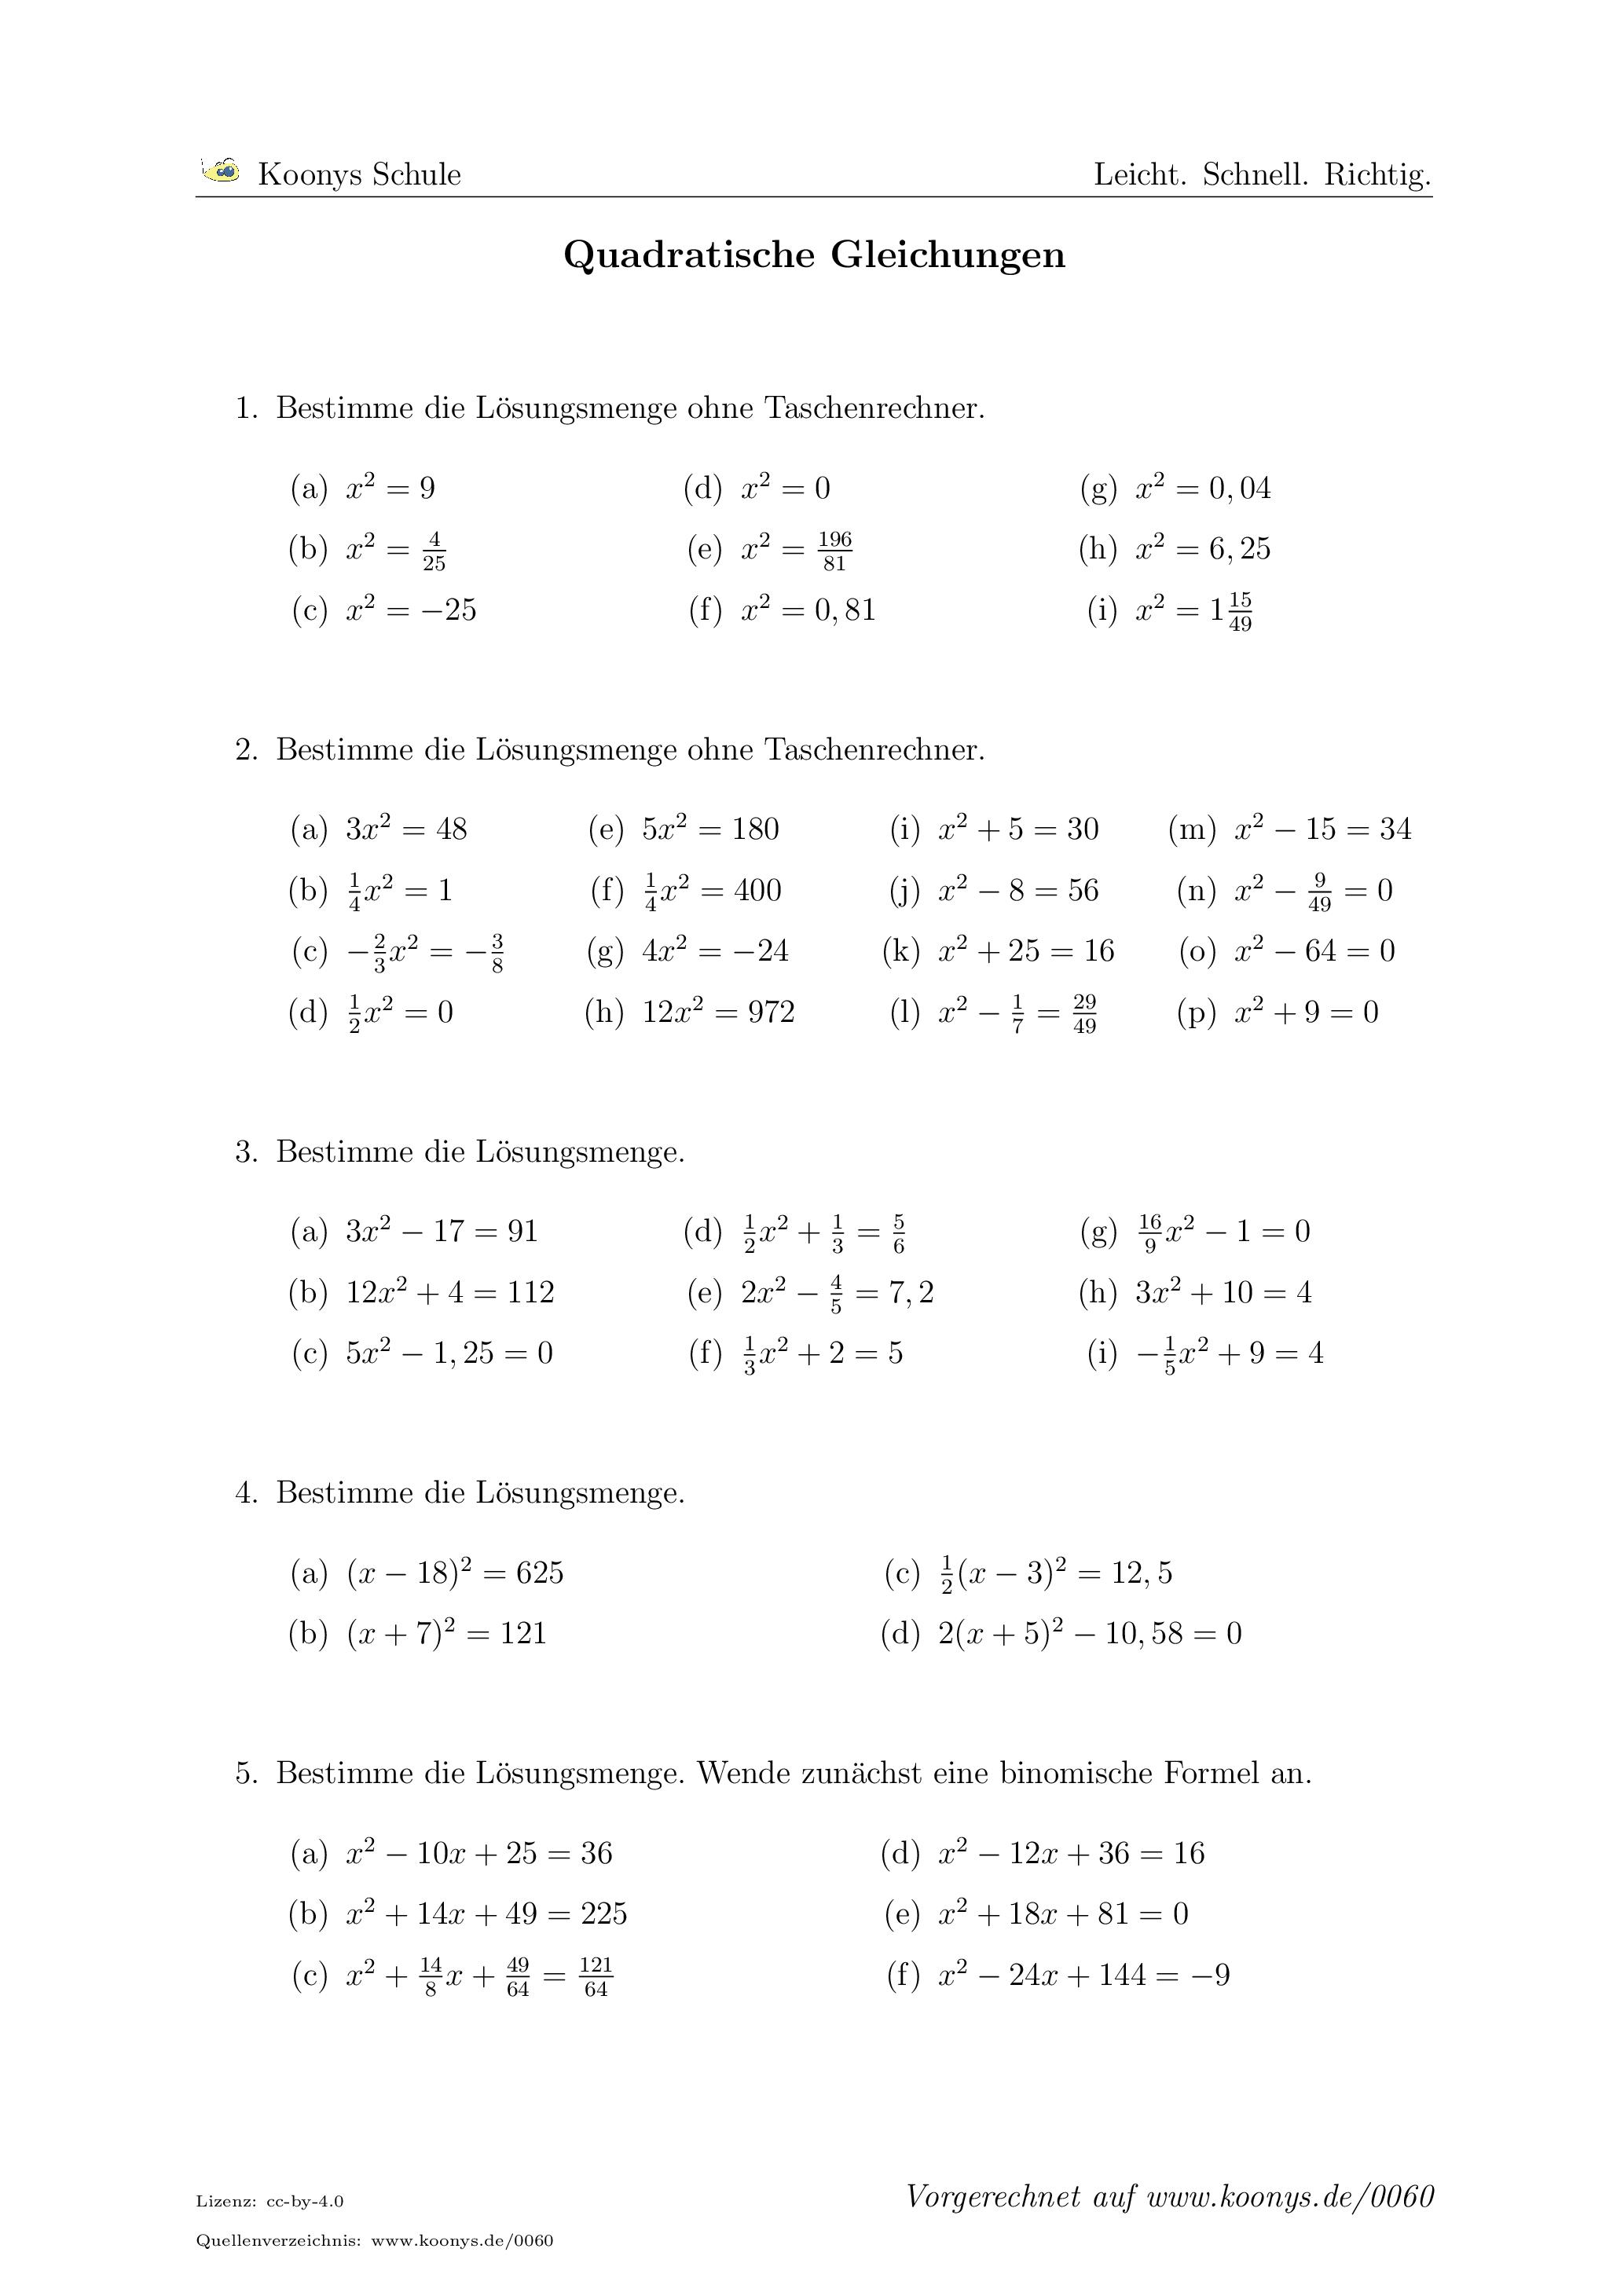 Aufgaben Quadratische Gleichungen mit Lösungen | Koonys ...